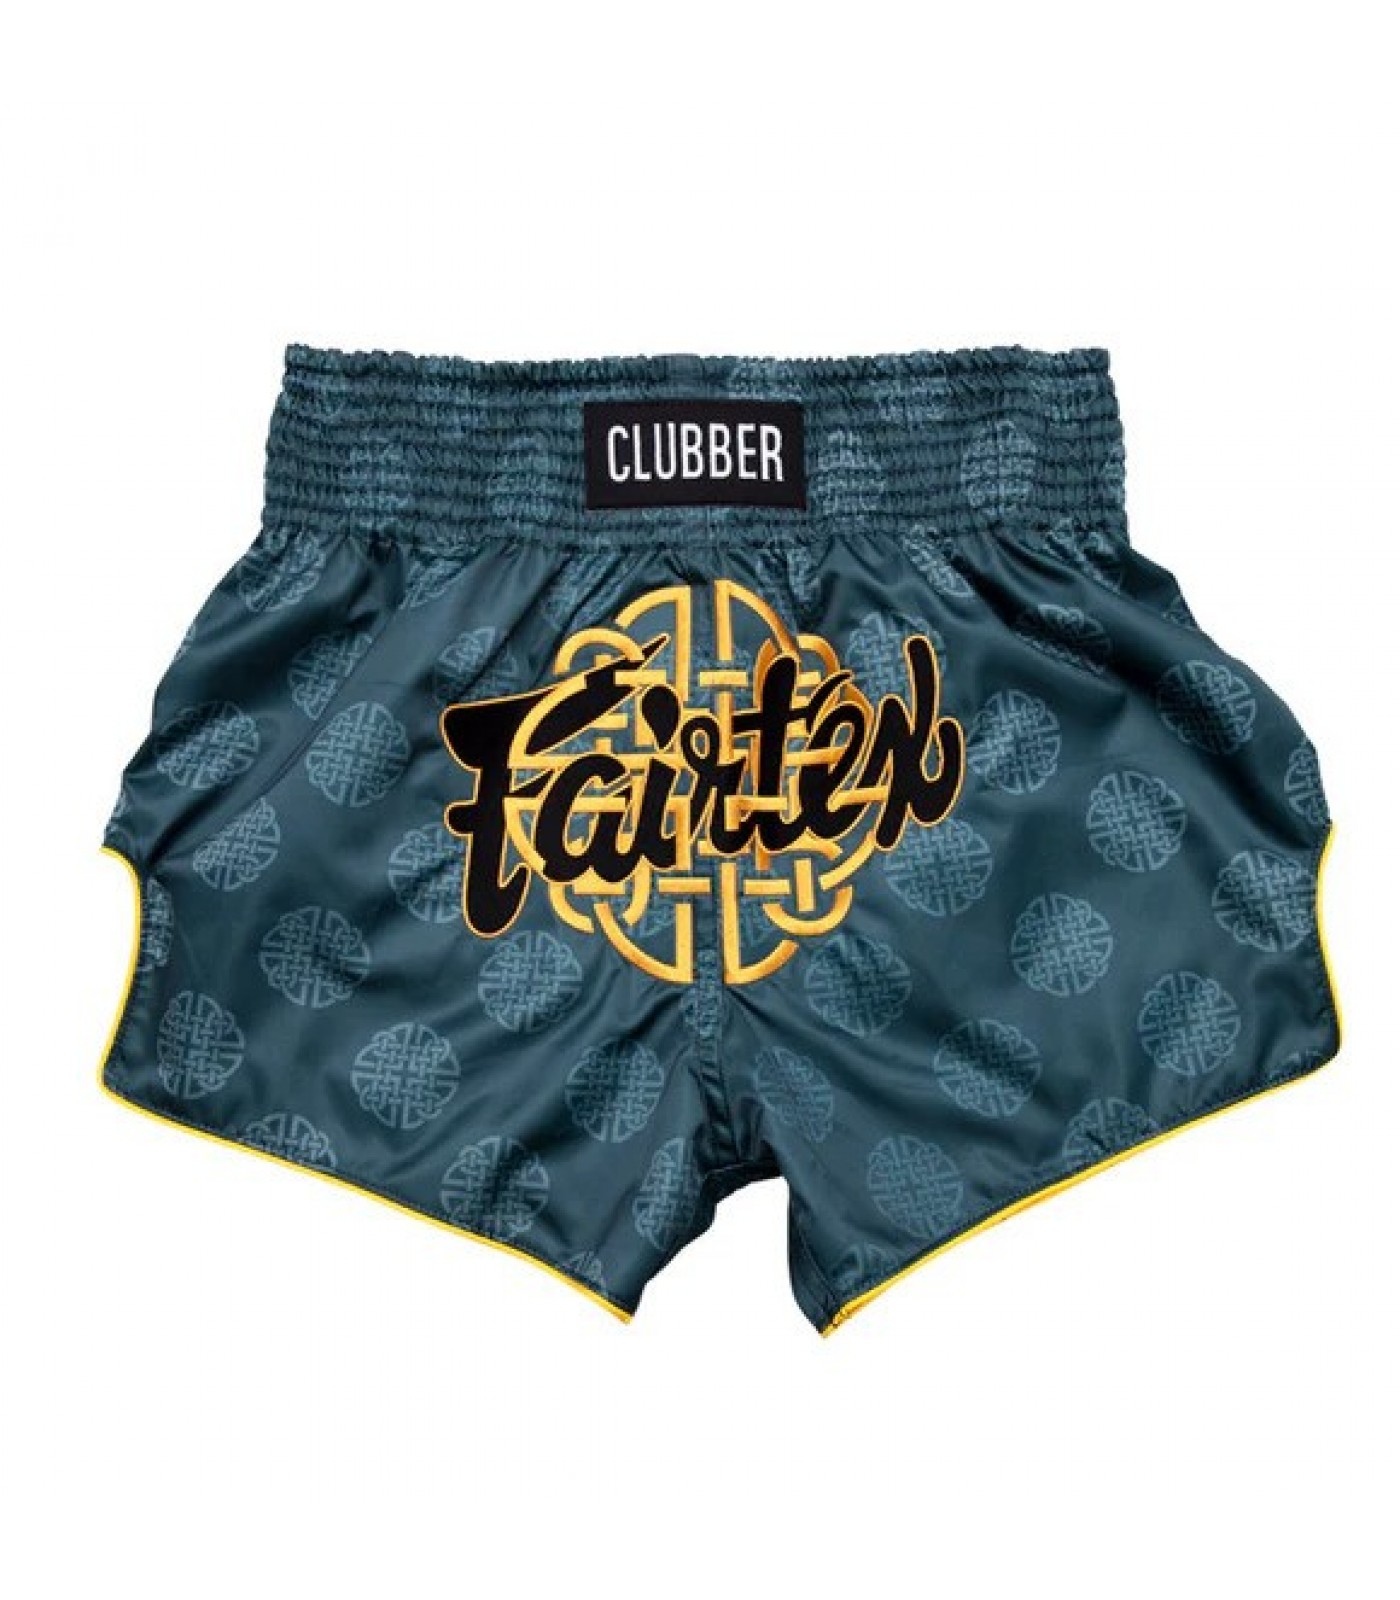 Шорти - Fairtex Muay Thai Shorts BS1915 Clubber - Green​